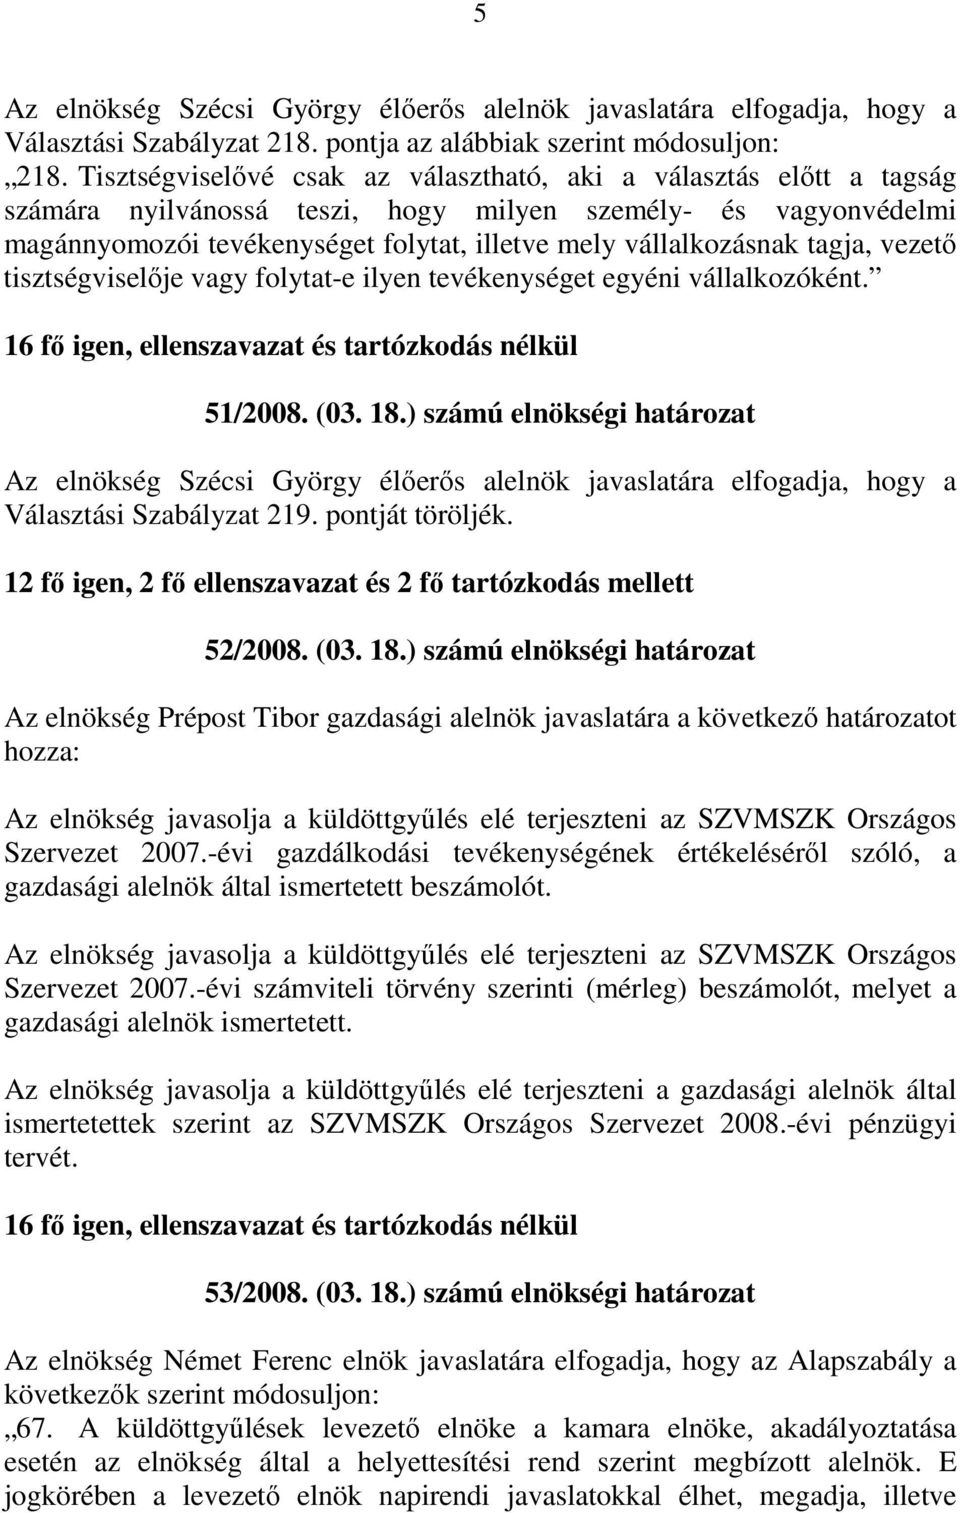 tagja, vezetı tisztségviselıje vagy folytat-e ilyen tevékenységet egyéni vállalkozóként. 51/2008. (03. 18.) számú elnökségi határozat Választási Szabályzat 219. pontját töröljék.